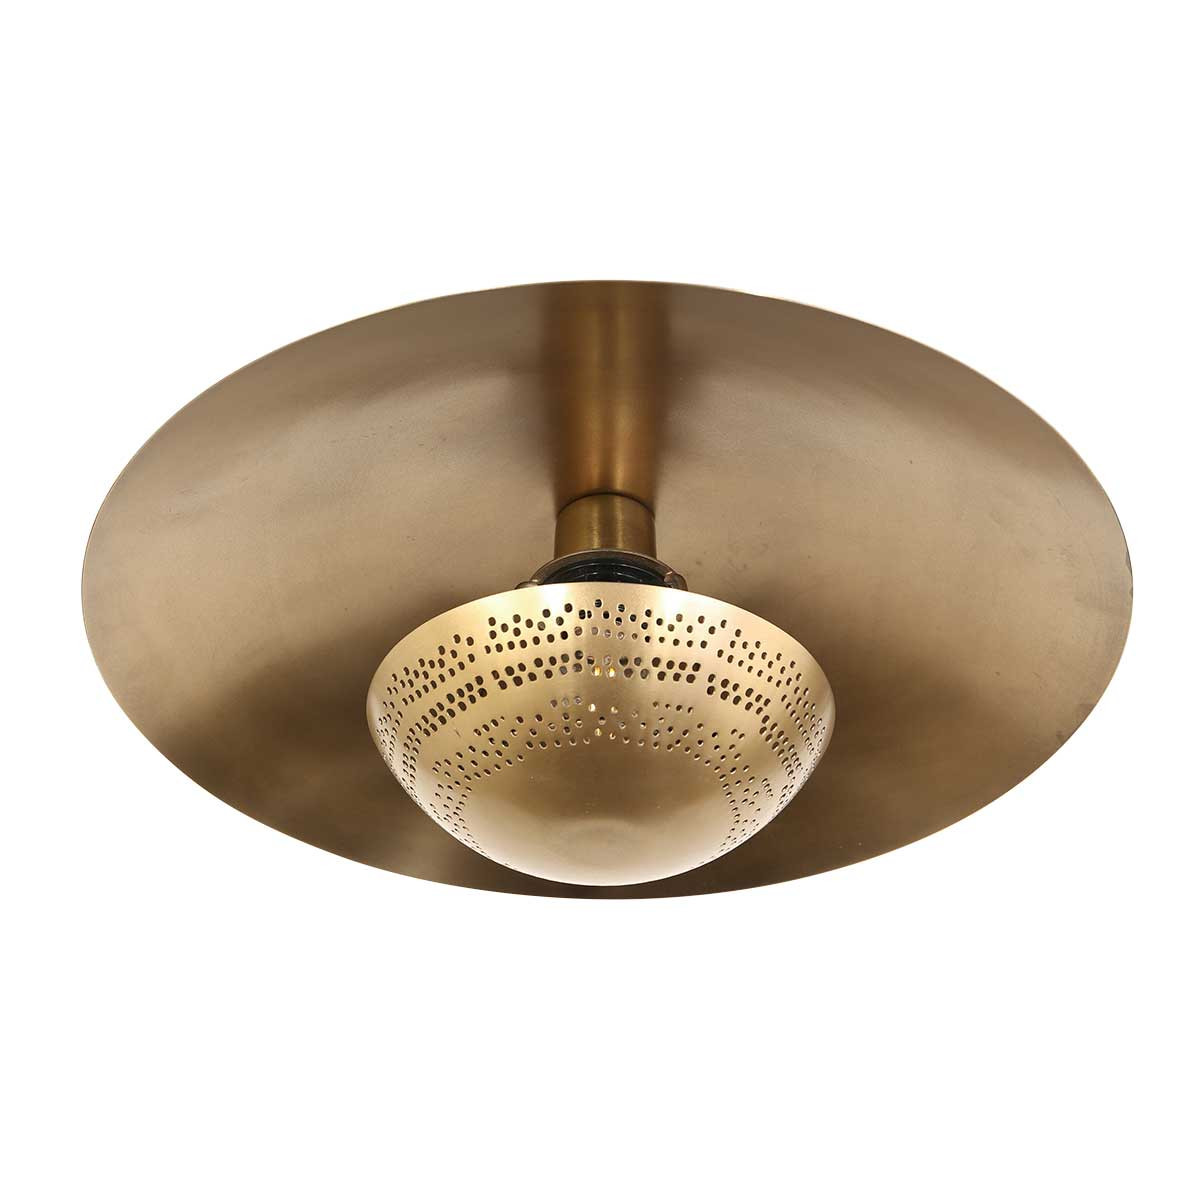 Vintage Deckenlampe rund bronze Anne Light in & Home Gold Brass